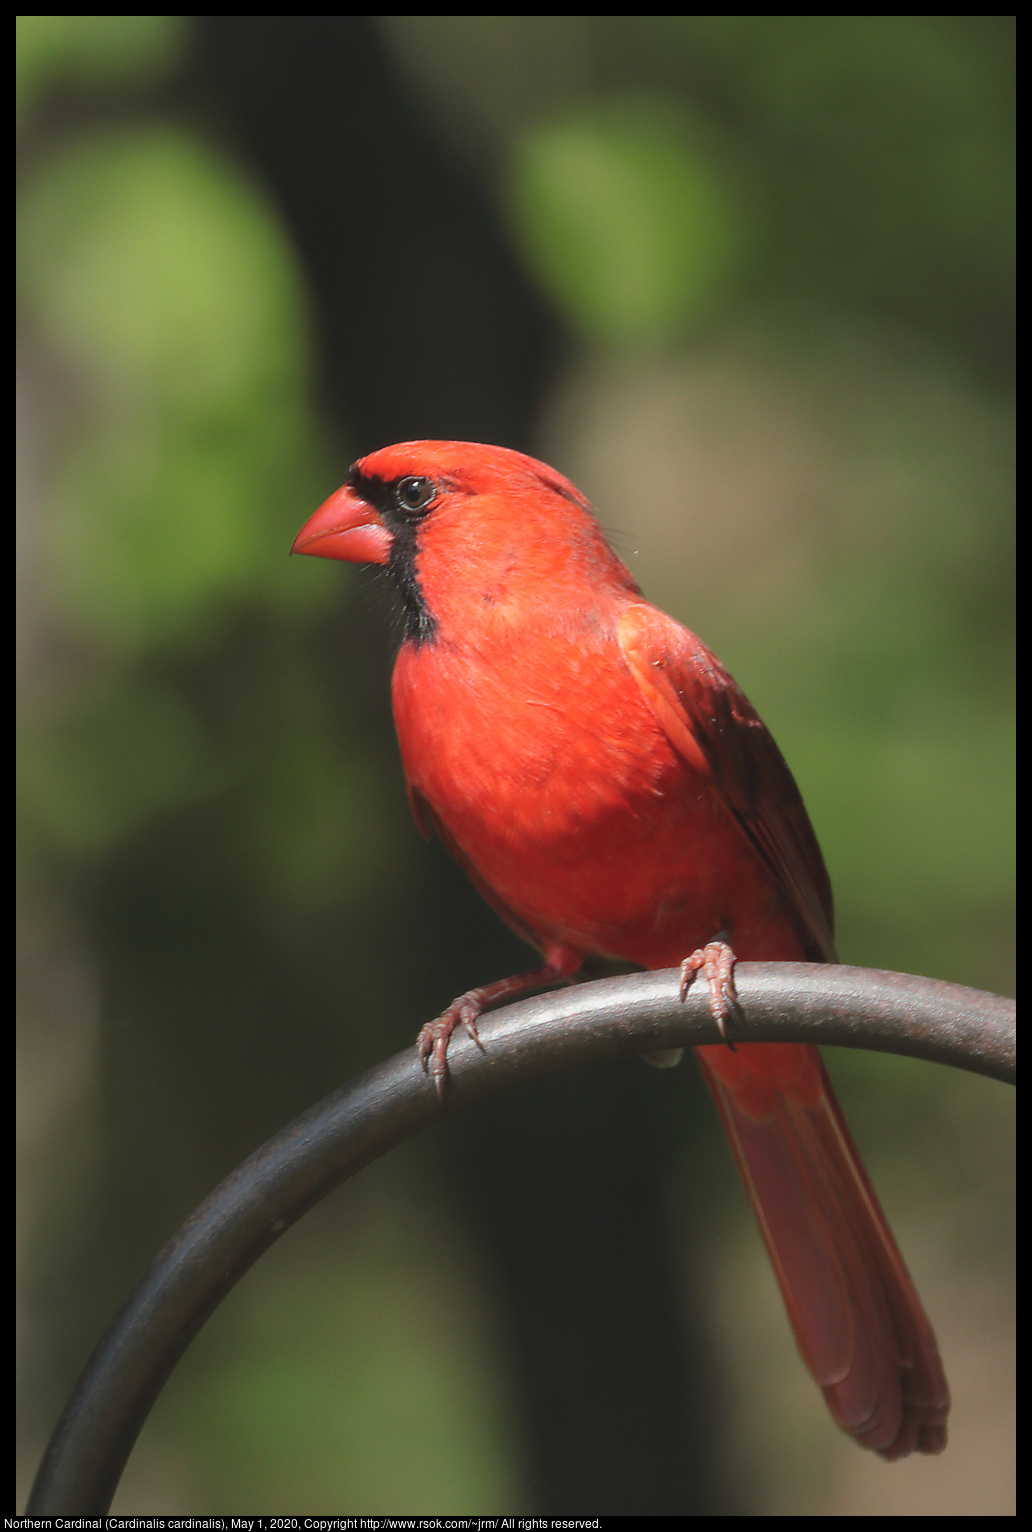 Northern Cardinal (Cardinalis cardinalis), May 1, 2020